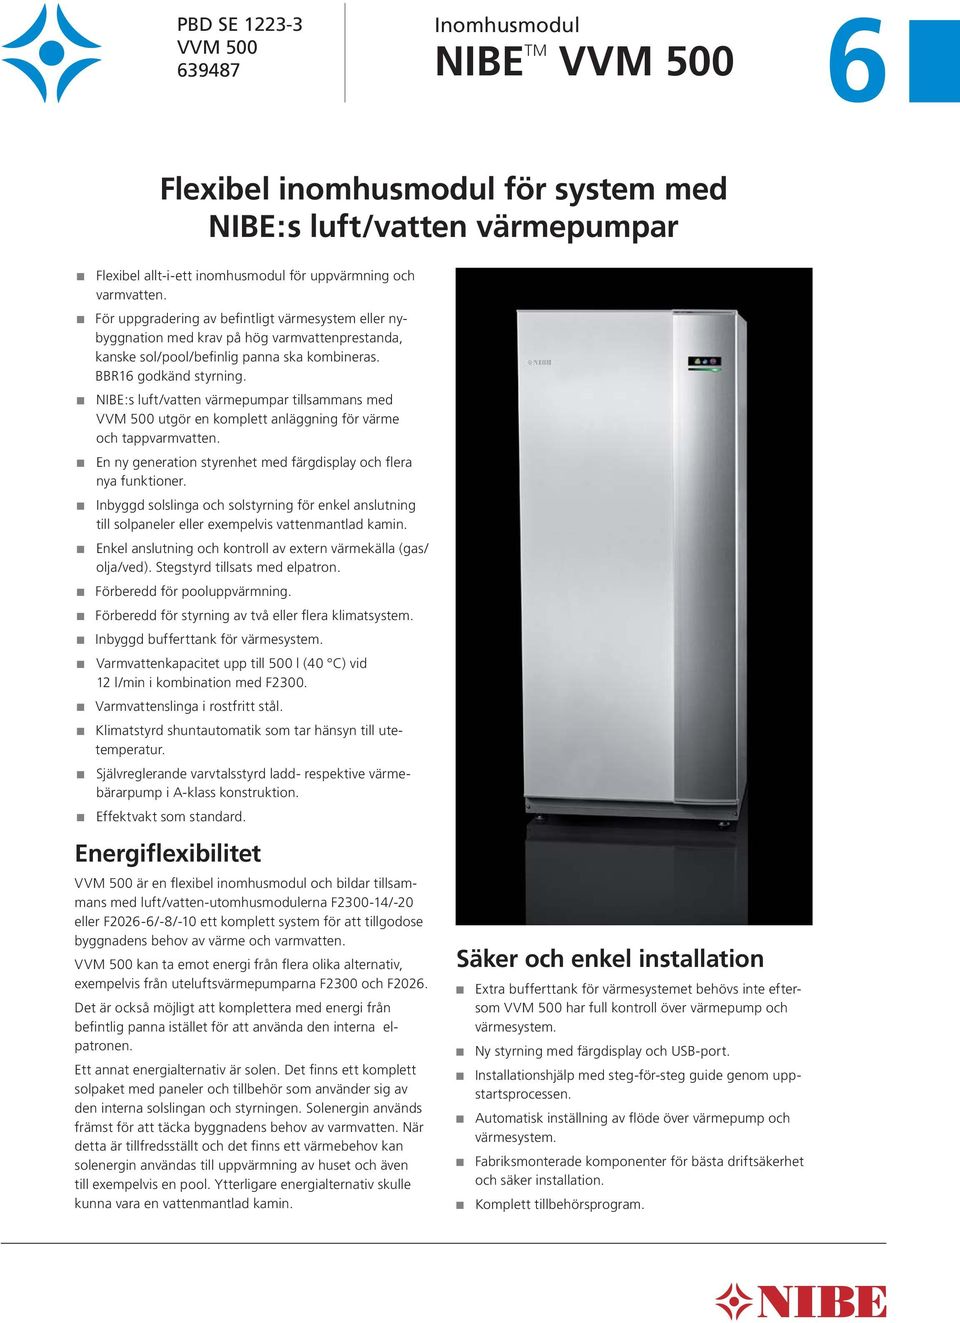 NIBE:s luft/vatten värmepumpar tillsammans med VVM 500 utgör en komplett anläggning för värme och tappvarmvatten. En ny generation styrenhet med färgdisplay och flera nya funktioner.